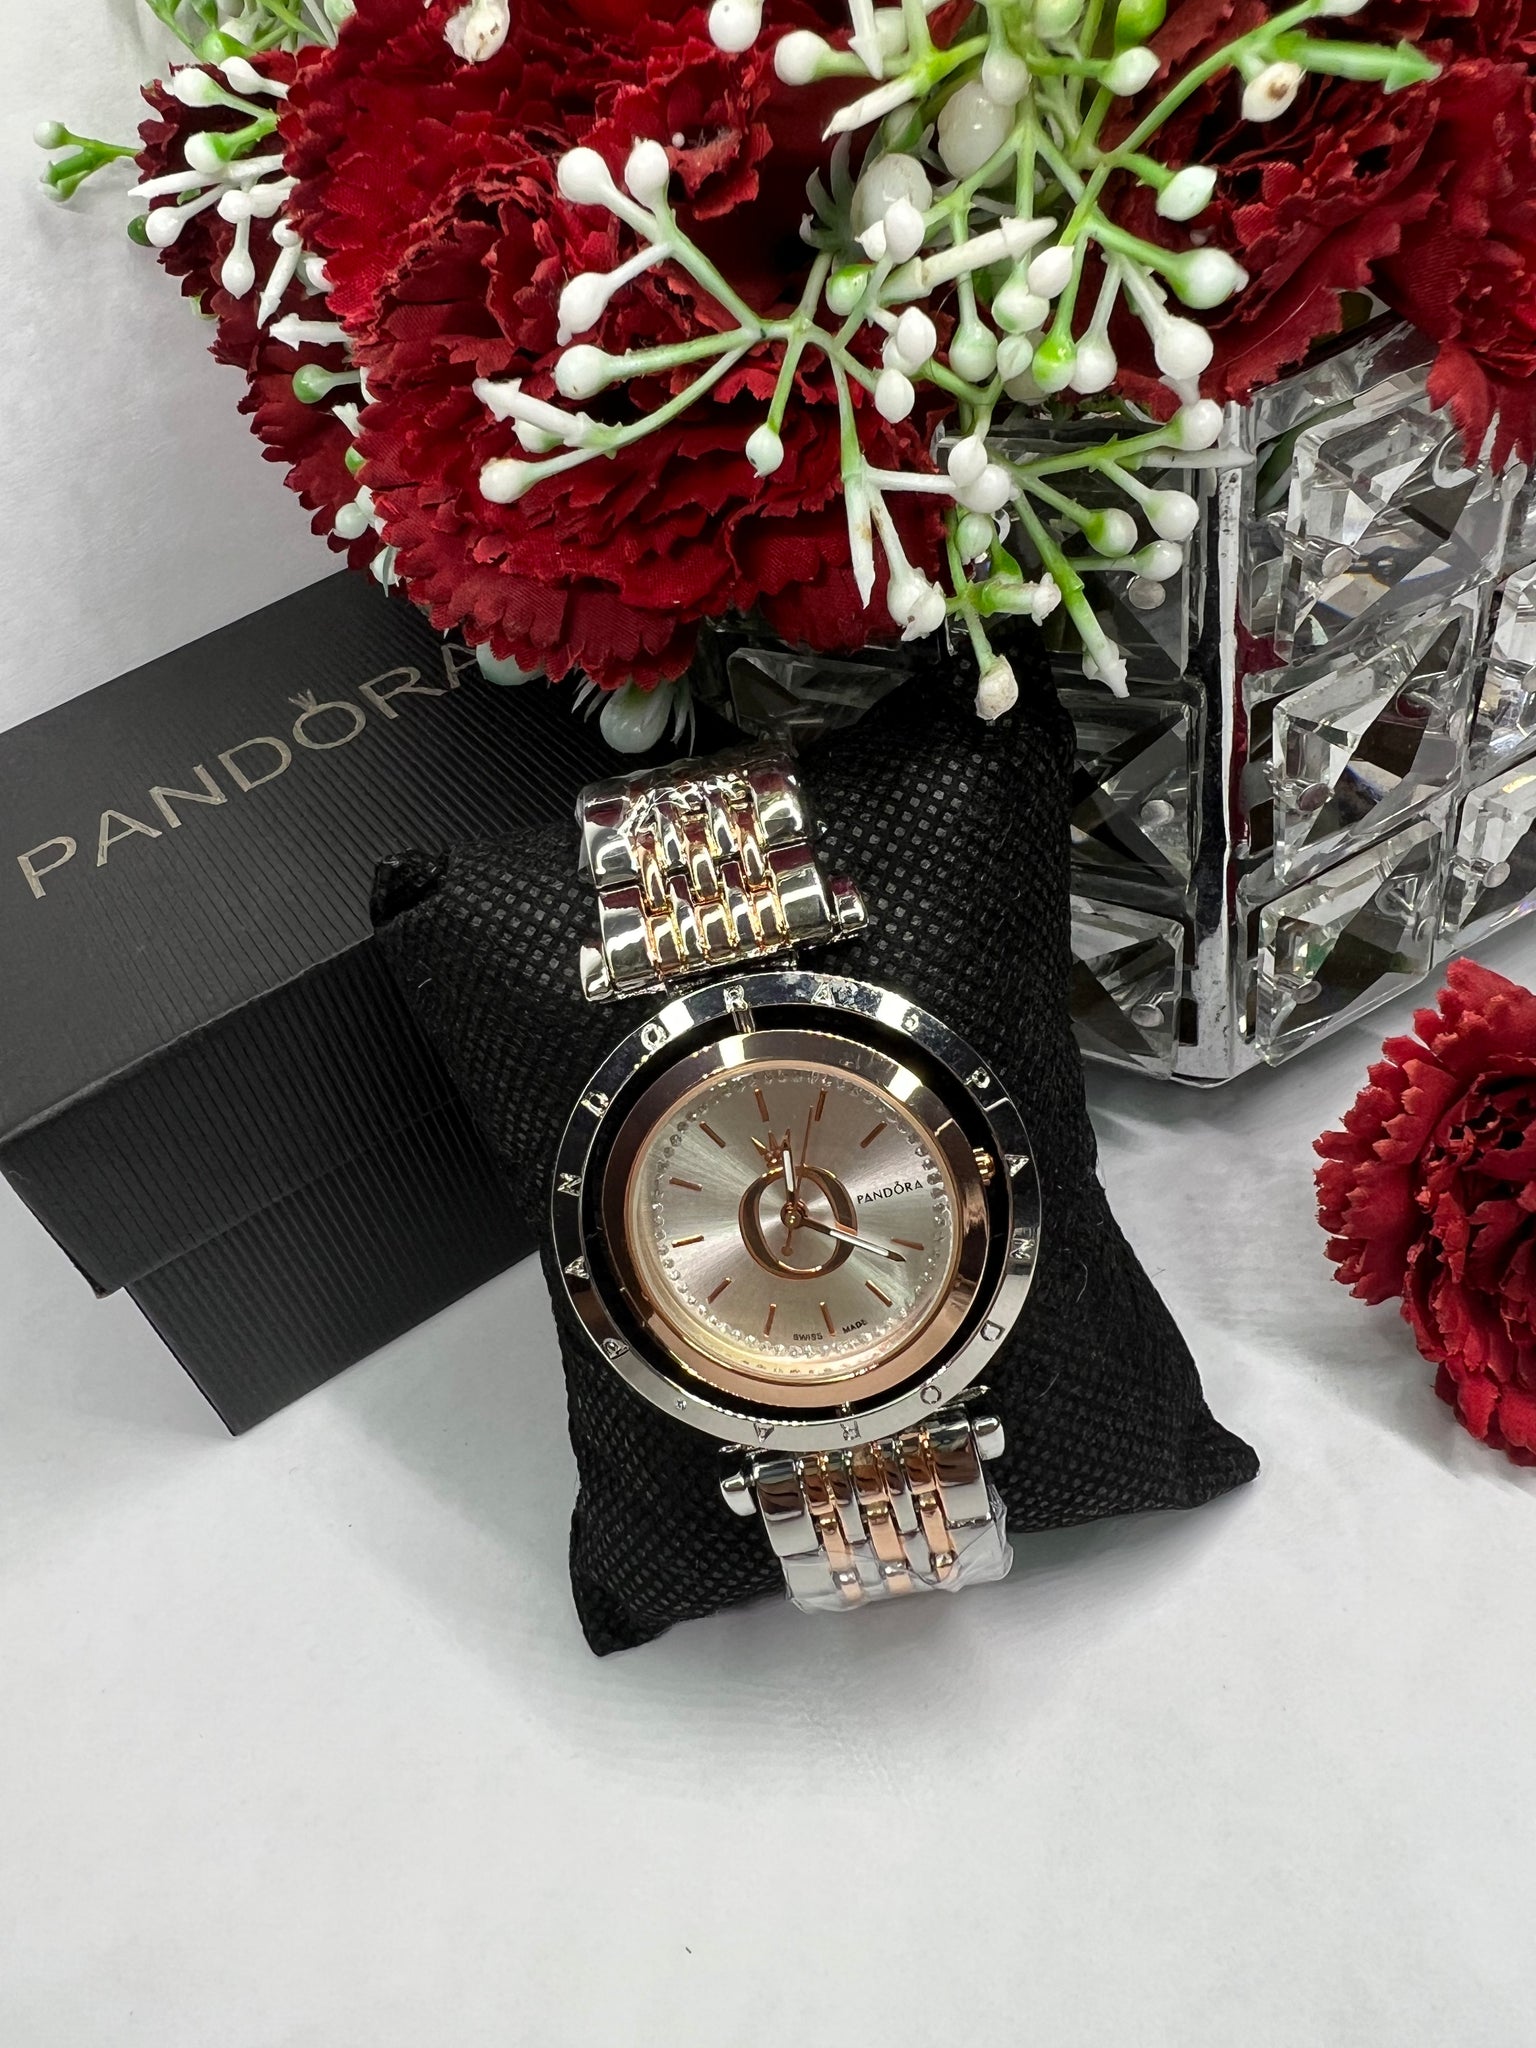 Reloj Pandora Plateado con Borde Rose Gold